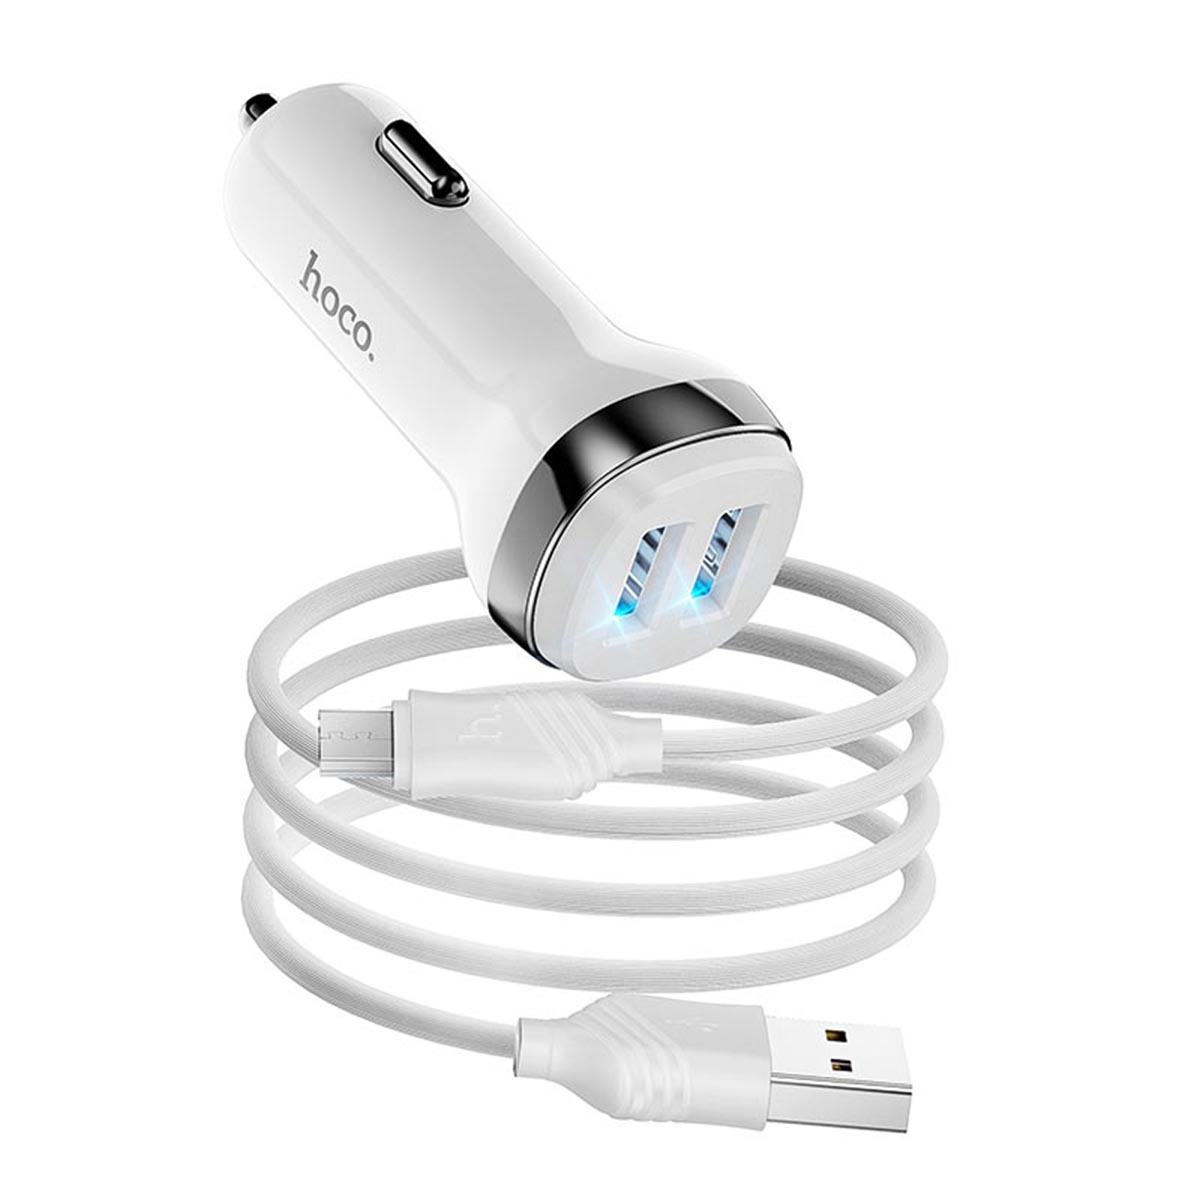 АЗУ (автомобильное зарядное устройство) HOCO Z40 Superior, 2 USB порта, кабель Micro USB, 1 метр, цвет белый